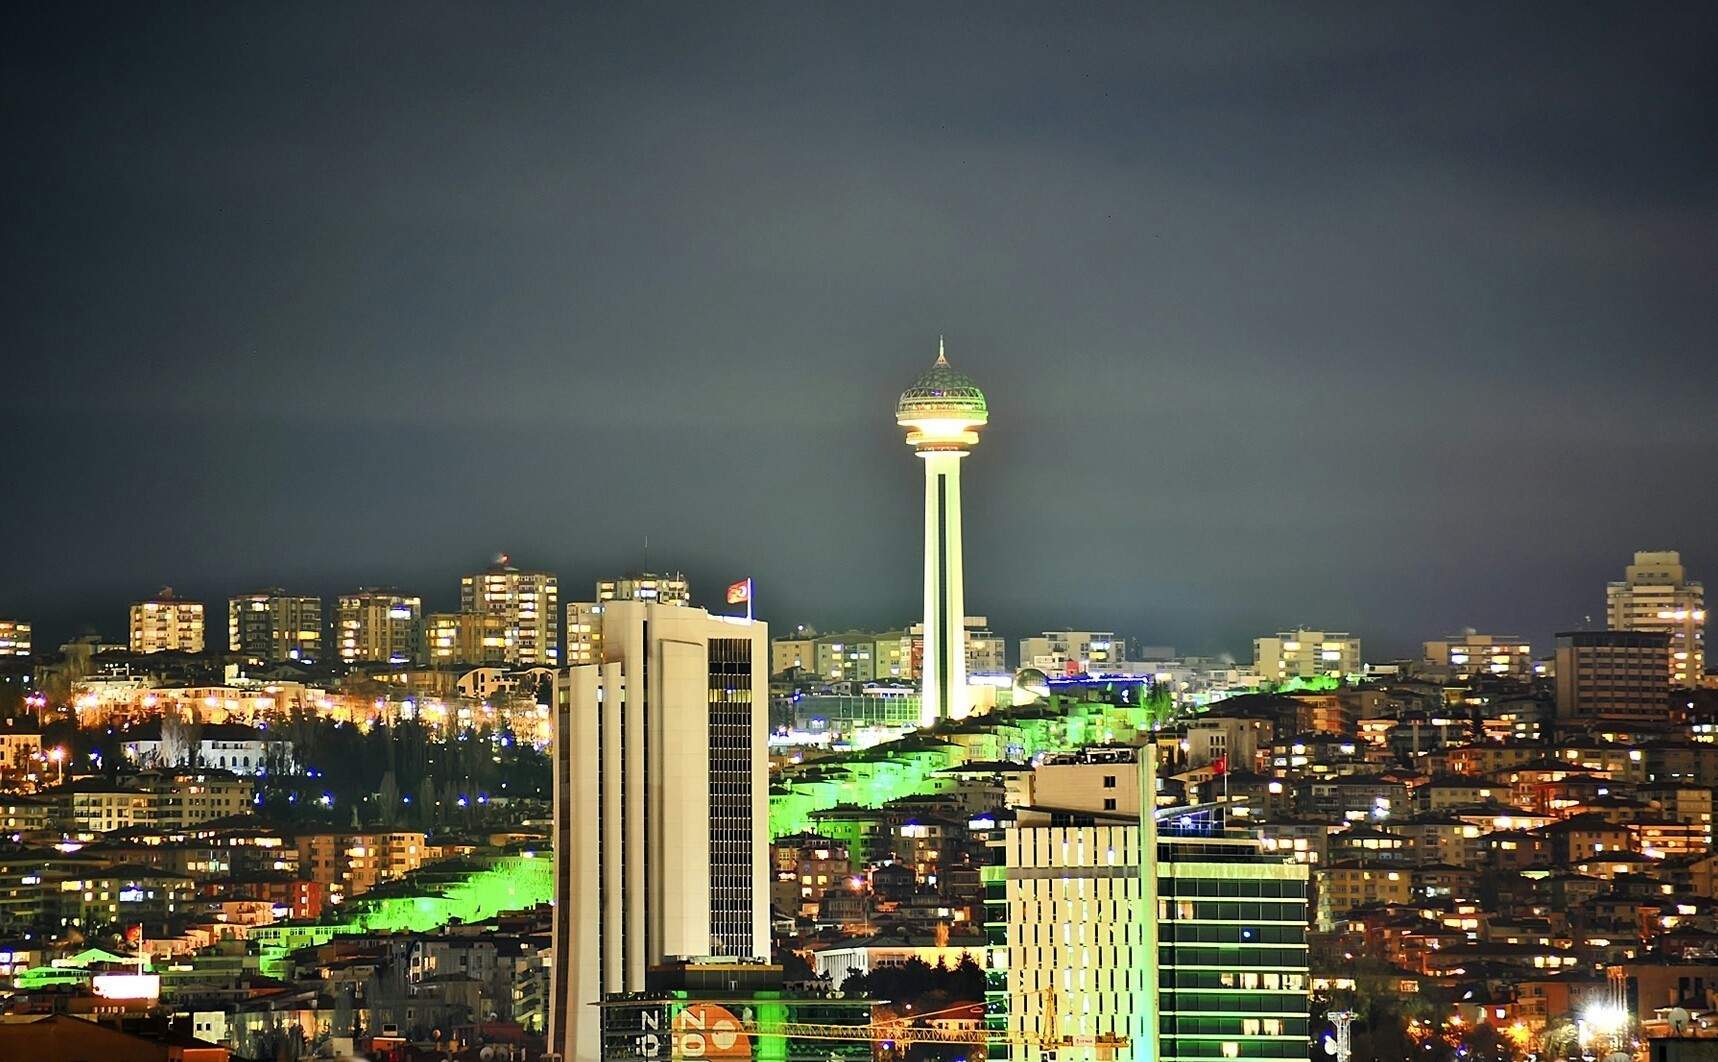 Ankarada Gezilecek En Güzel Yerler - Güzel Sözler